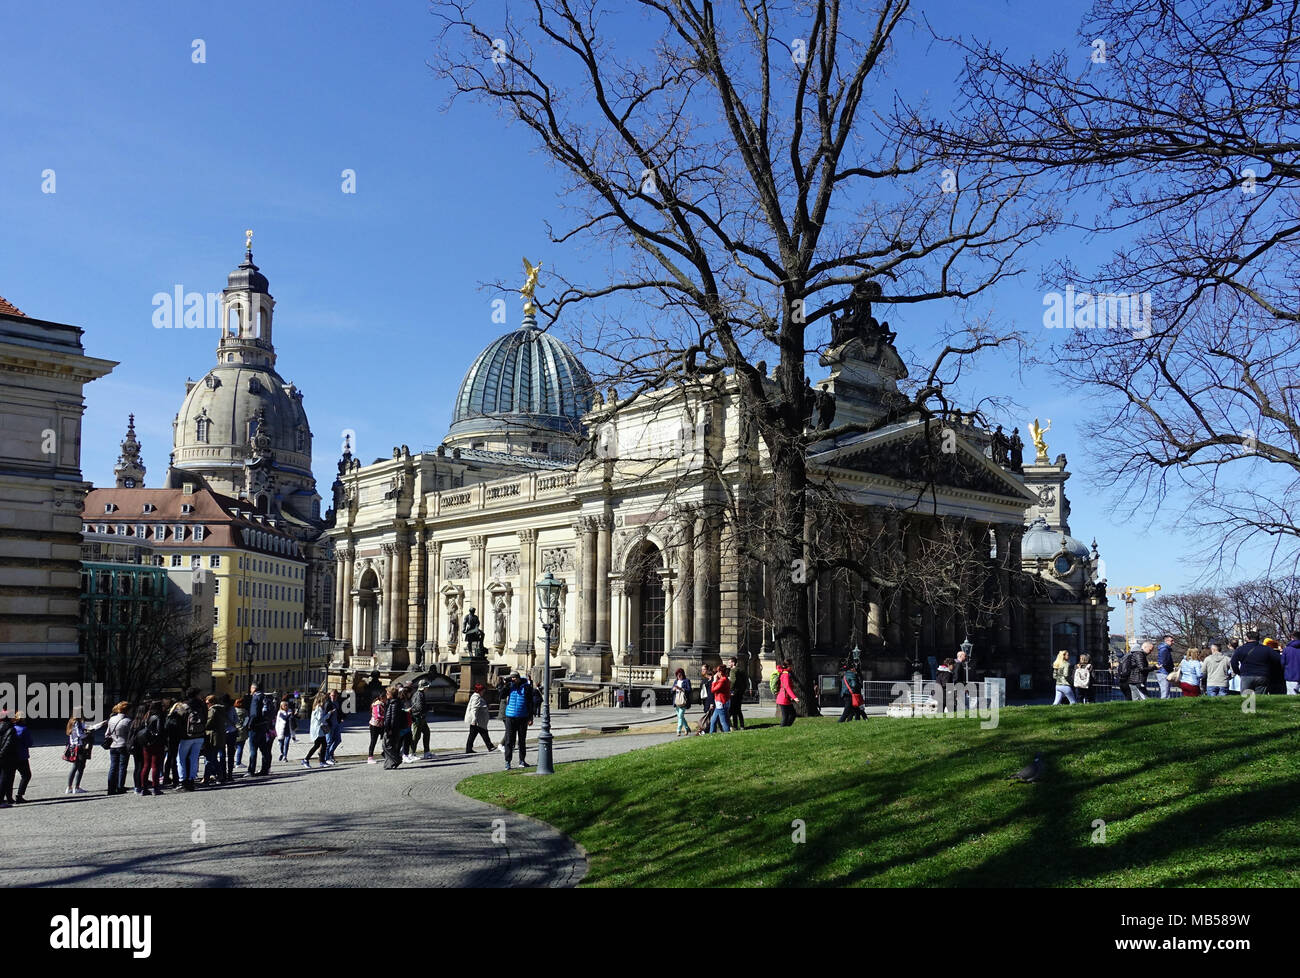 Los turistas delante de la Real Academia de Bellas Artes de Dresden Frauenkirche, Bruehl's Terrace, Dresde, Sajonia, Alemania Foto de stock